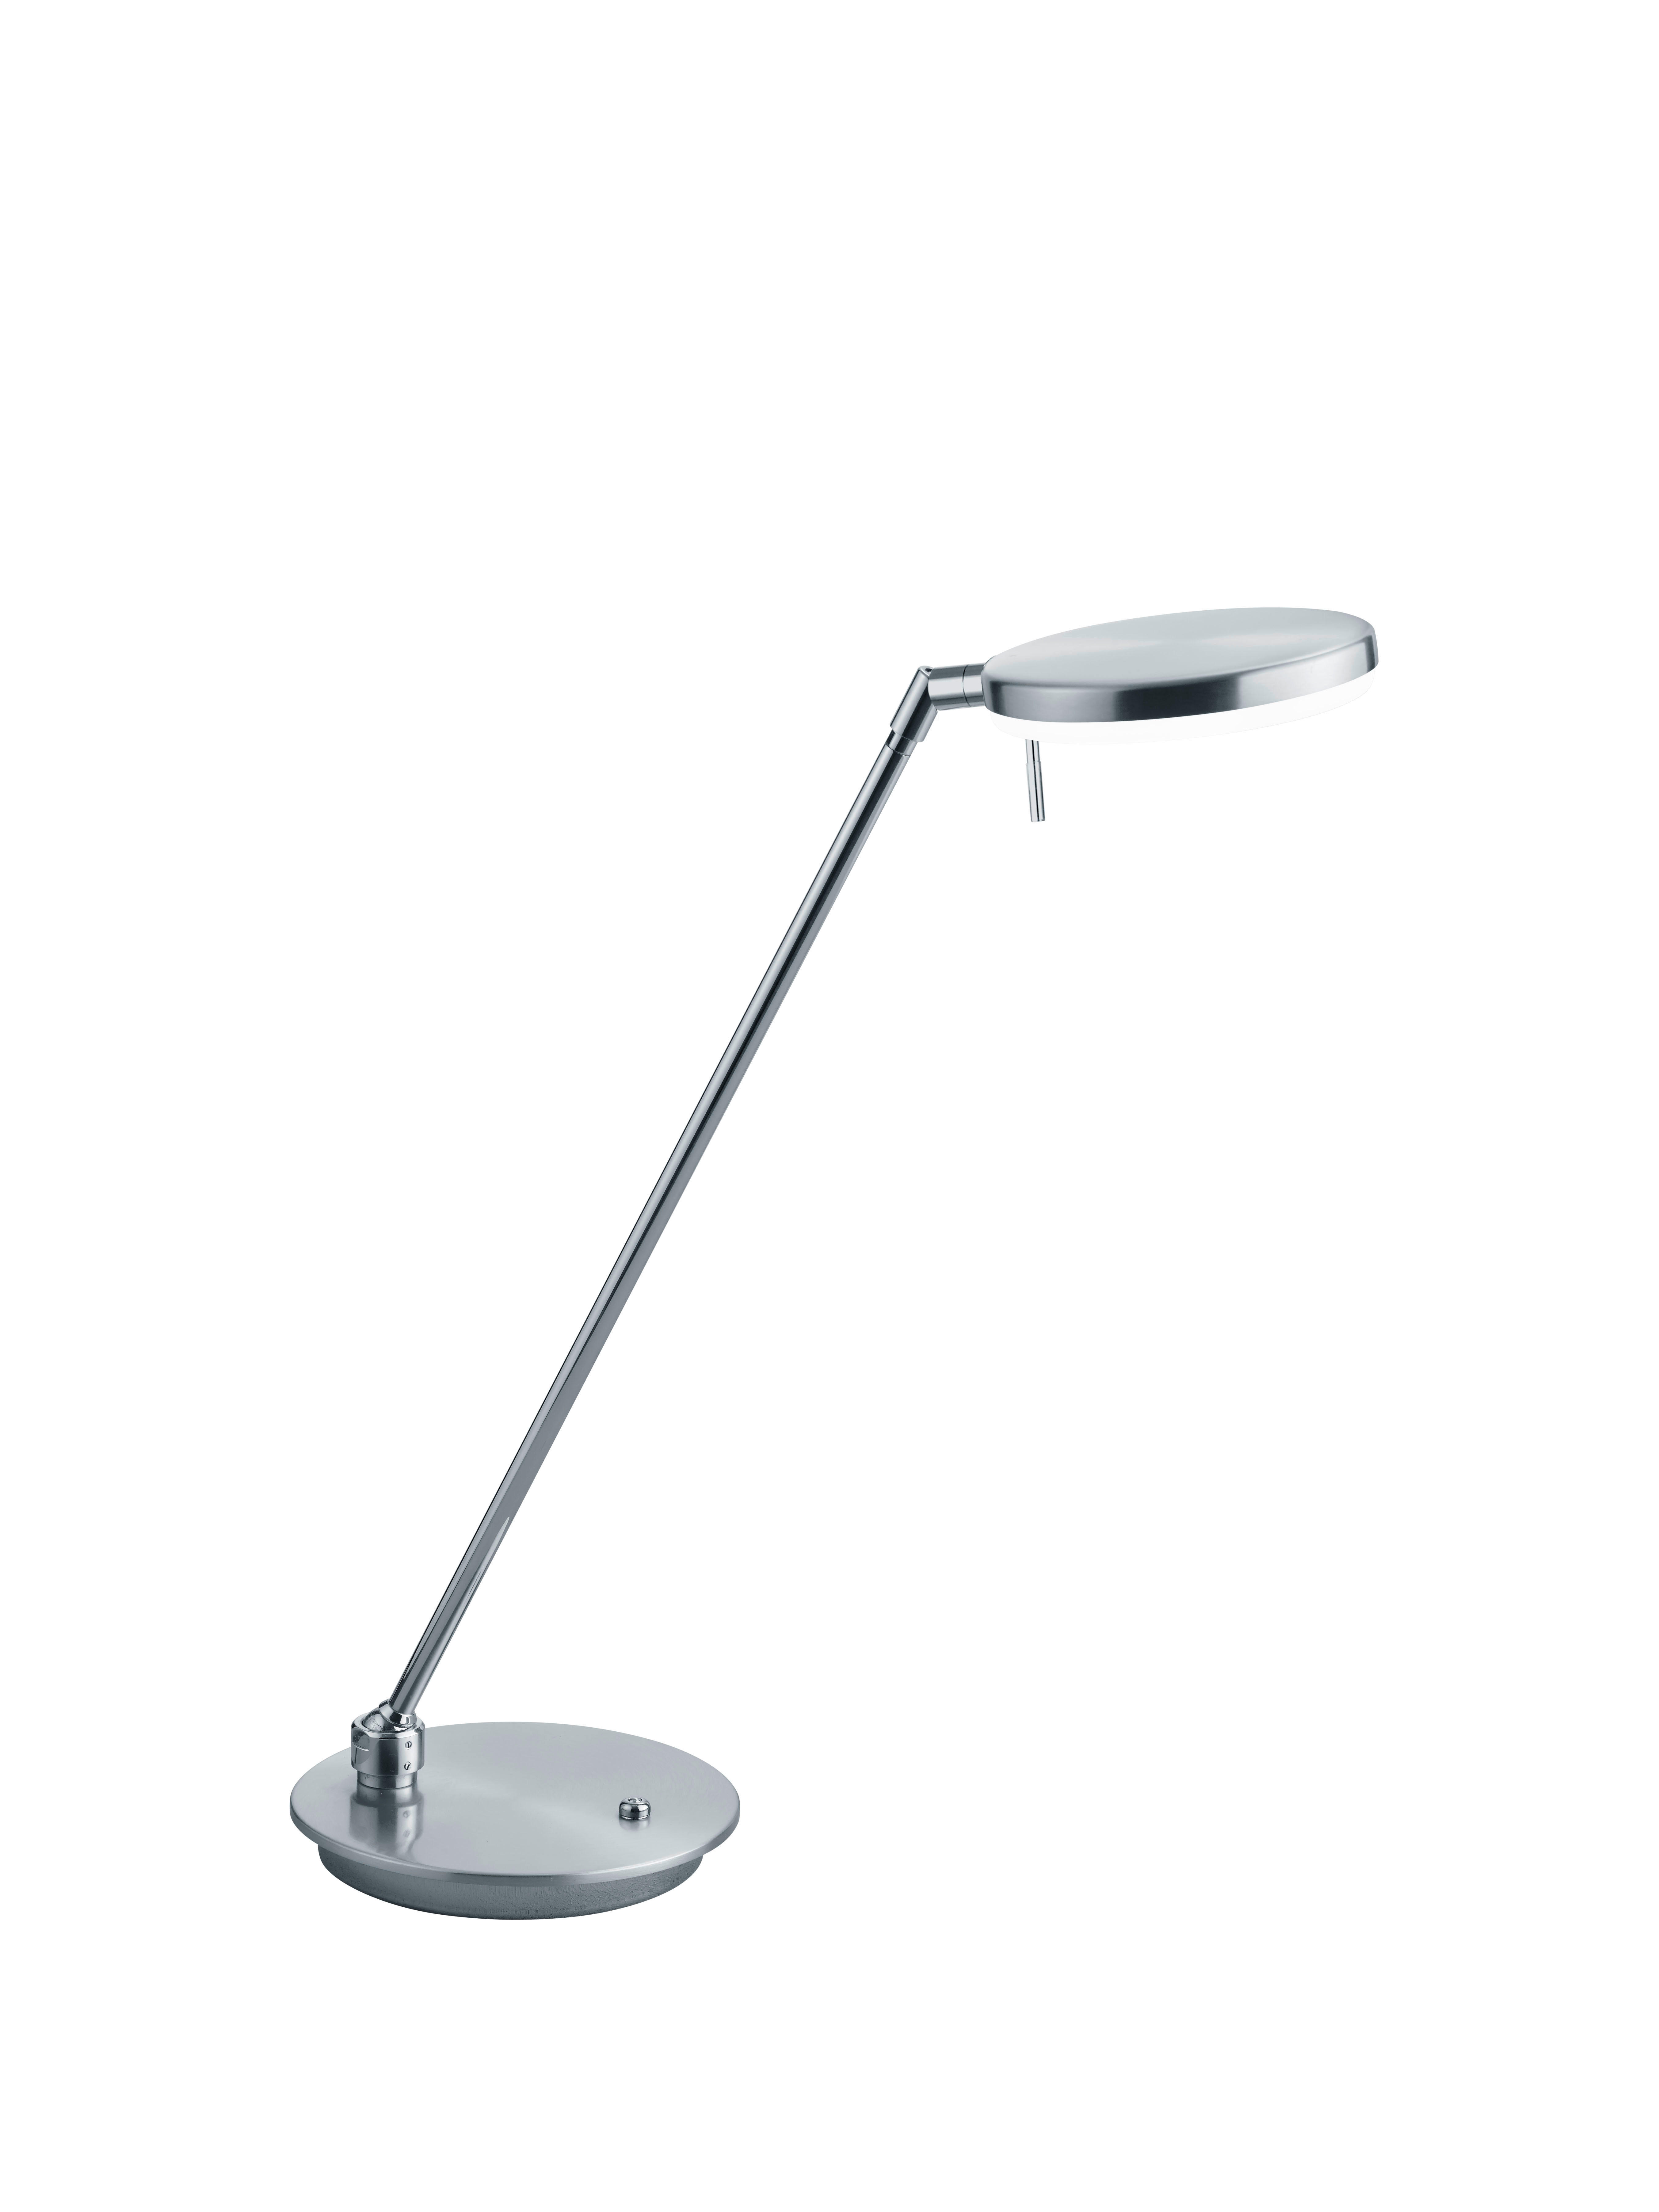 LED-TISCHLEUCHTE  - Weiß/Nickelfarben, Design, Kunststoff/Metall (49cm)